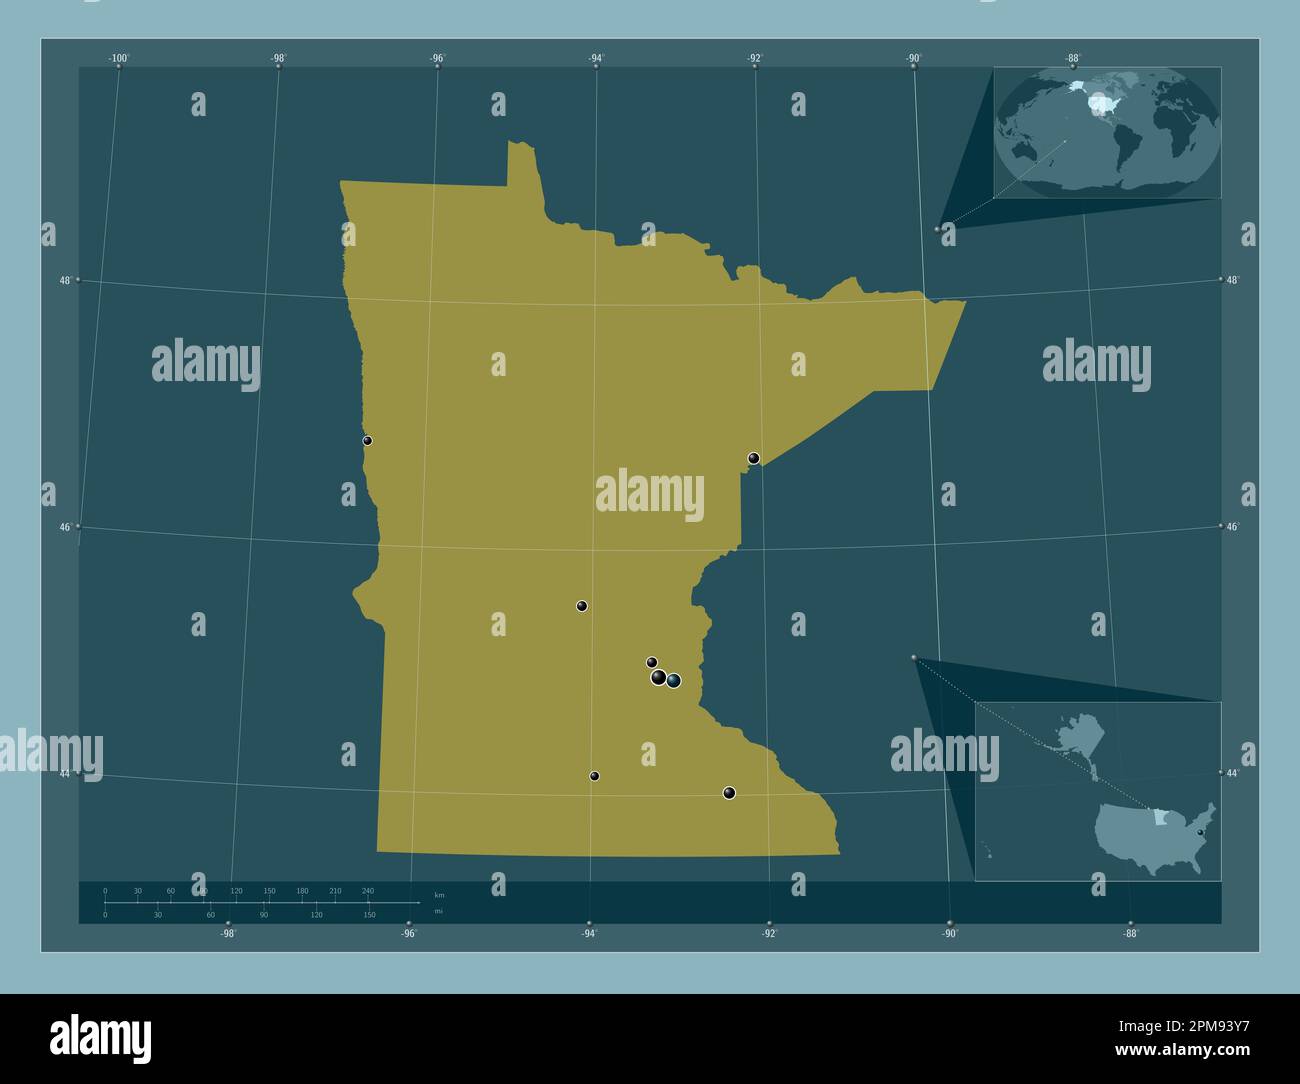 Minnesota, Bundesstaat der Vereinigten Staaten von Amerika. Durchgehende Farbform. Standorte der wichtigsten Städte der Region. Eckkarten für zusätzliche Standorte Stockfoto